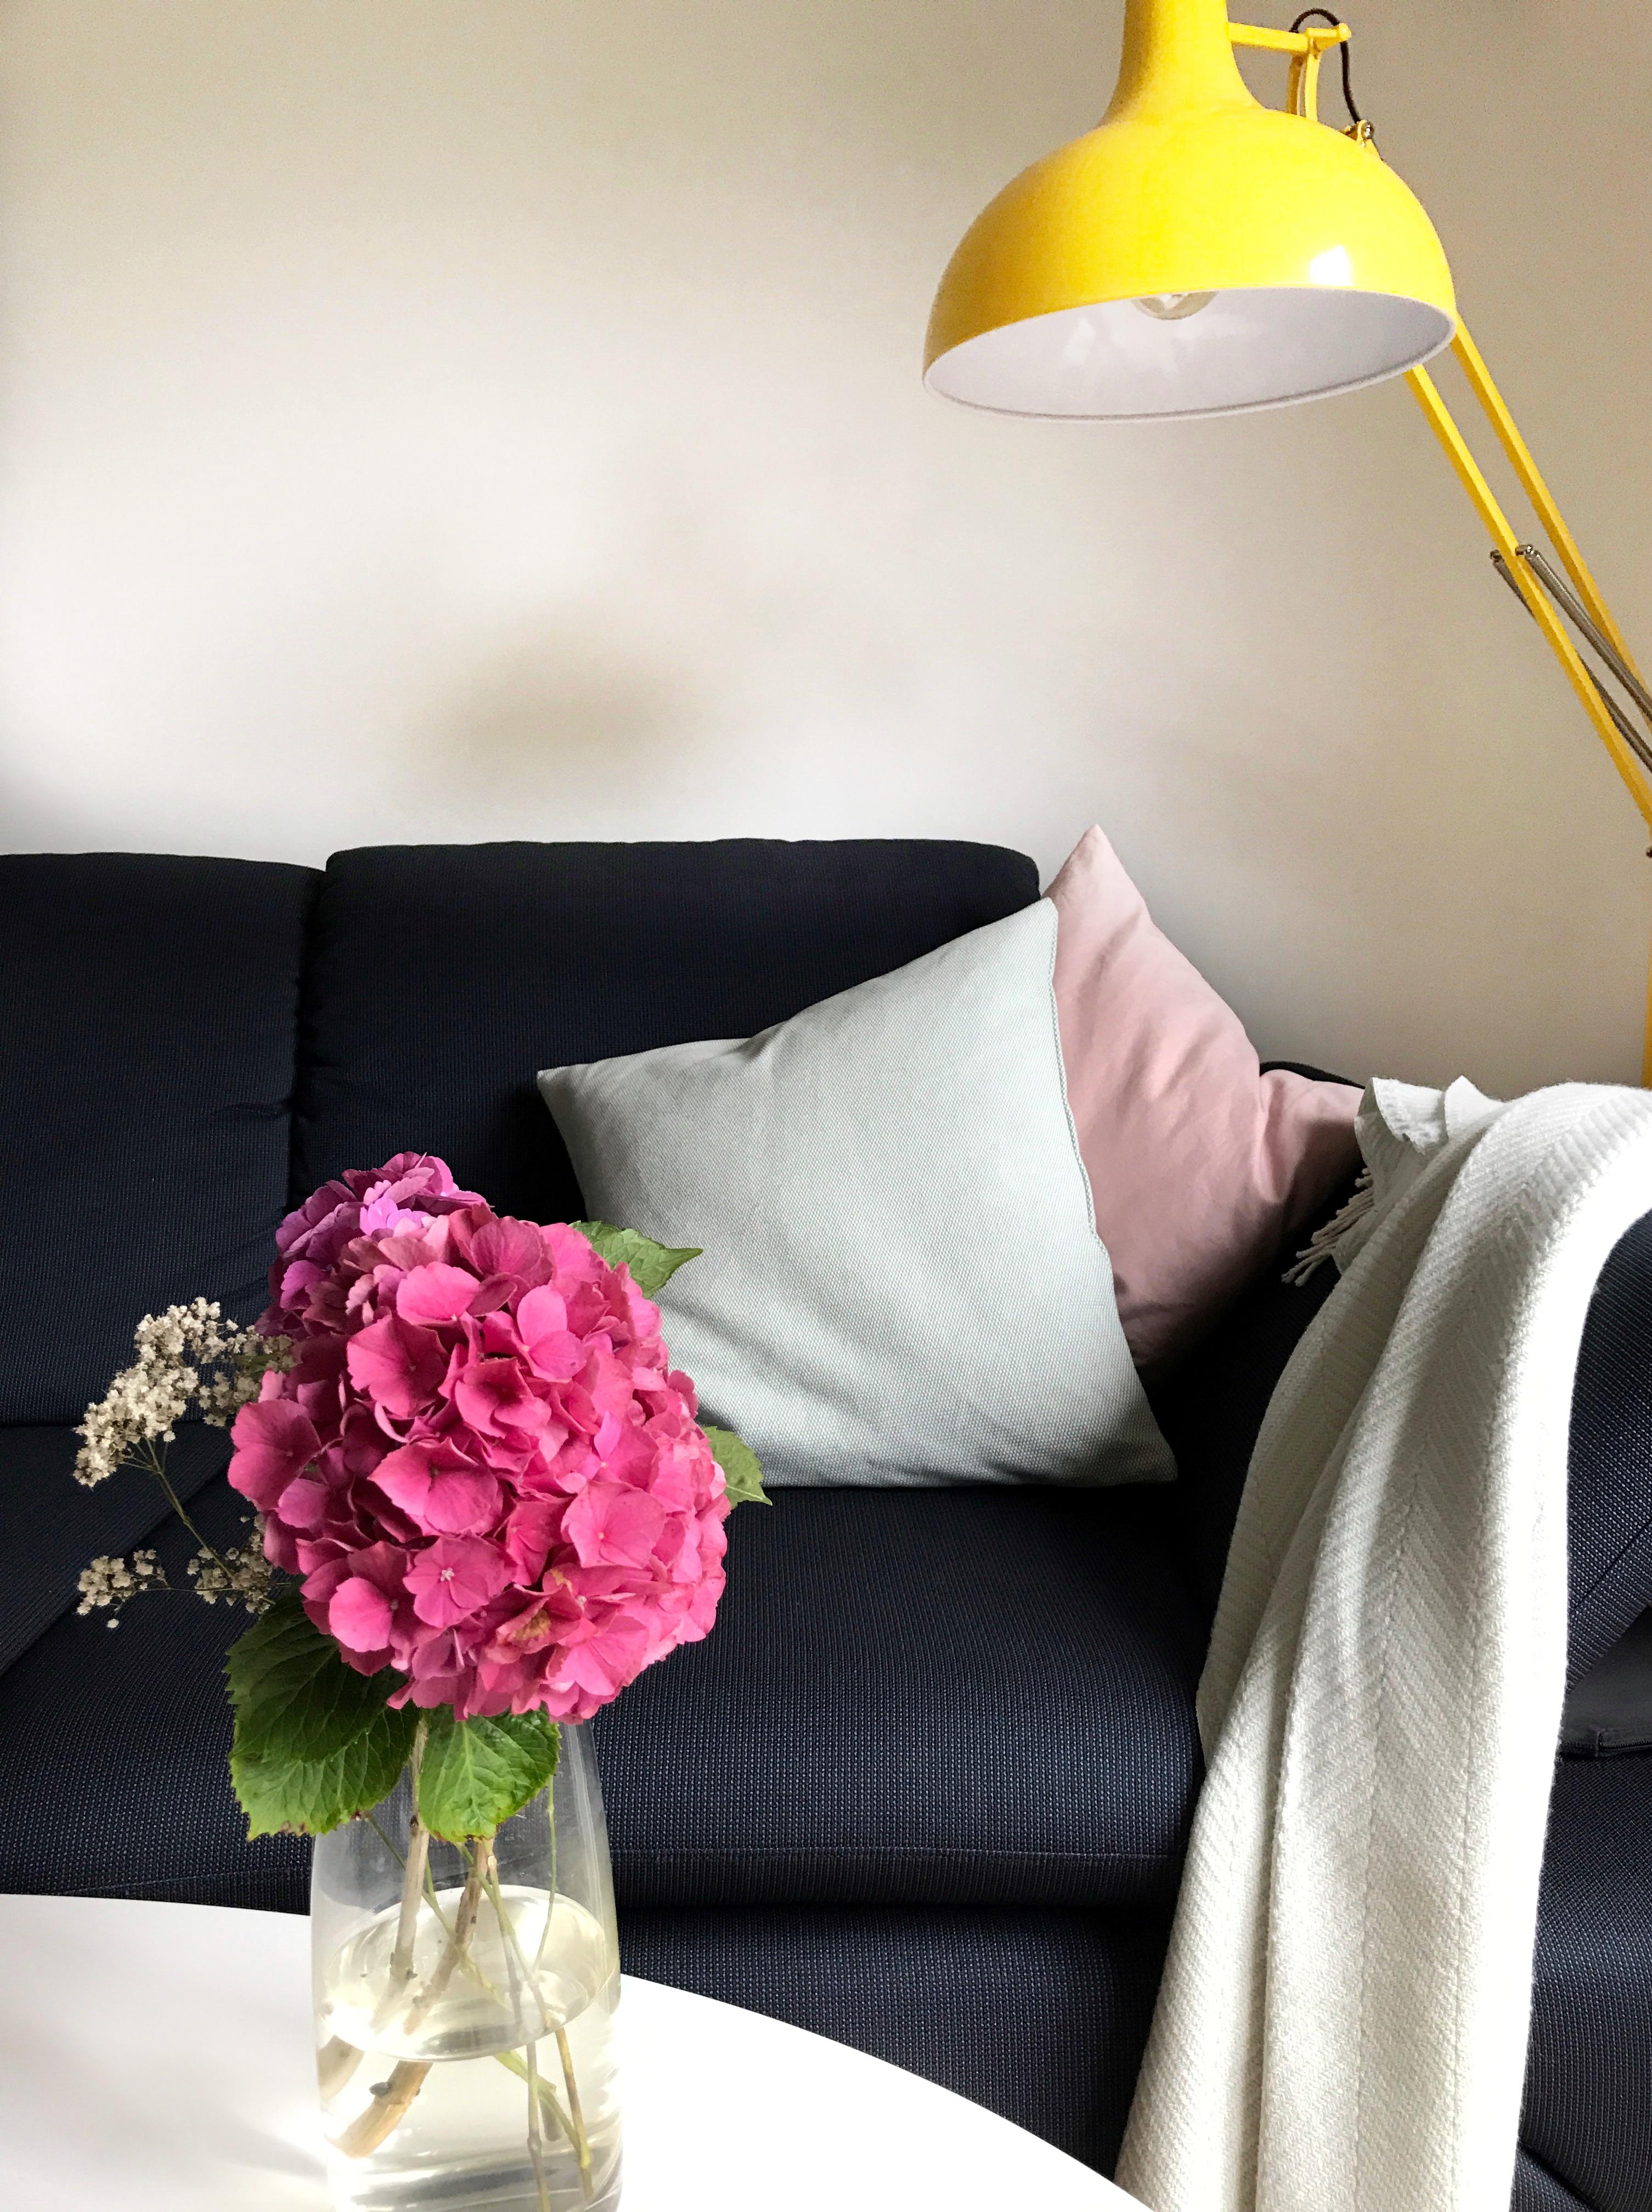 Kontraste im #wohnzimmer #stehlampe #gelb #hortensien #gemütlicheswohnzimmer #pink #kissen #rosa #türkis